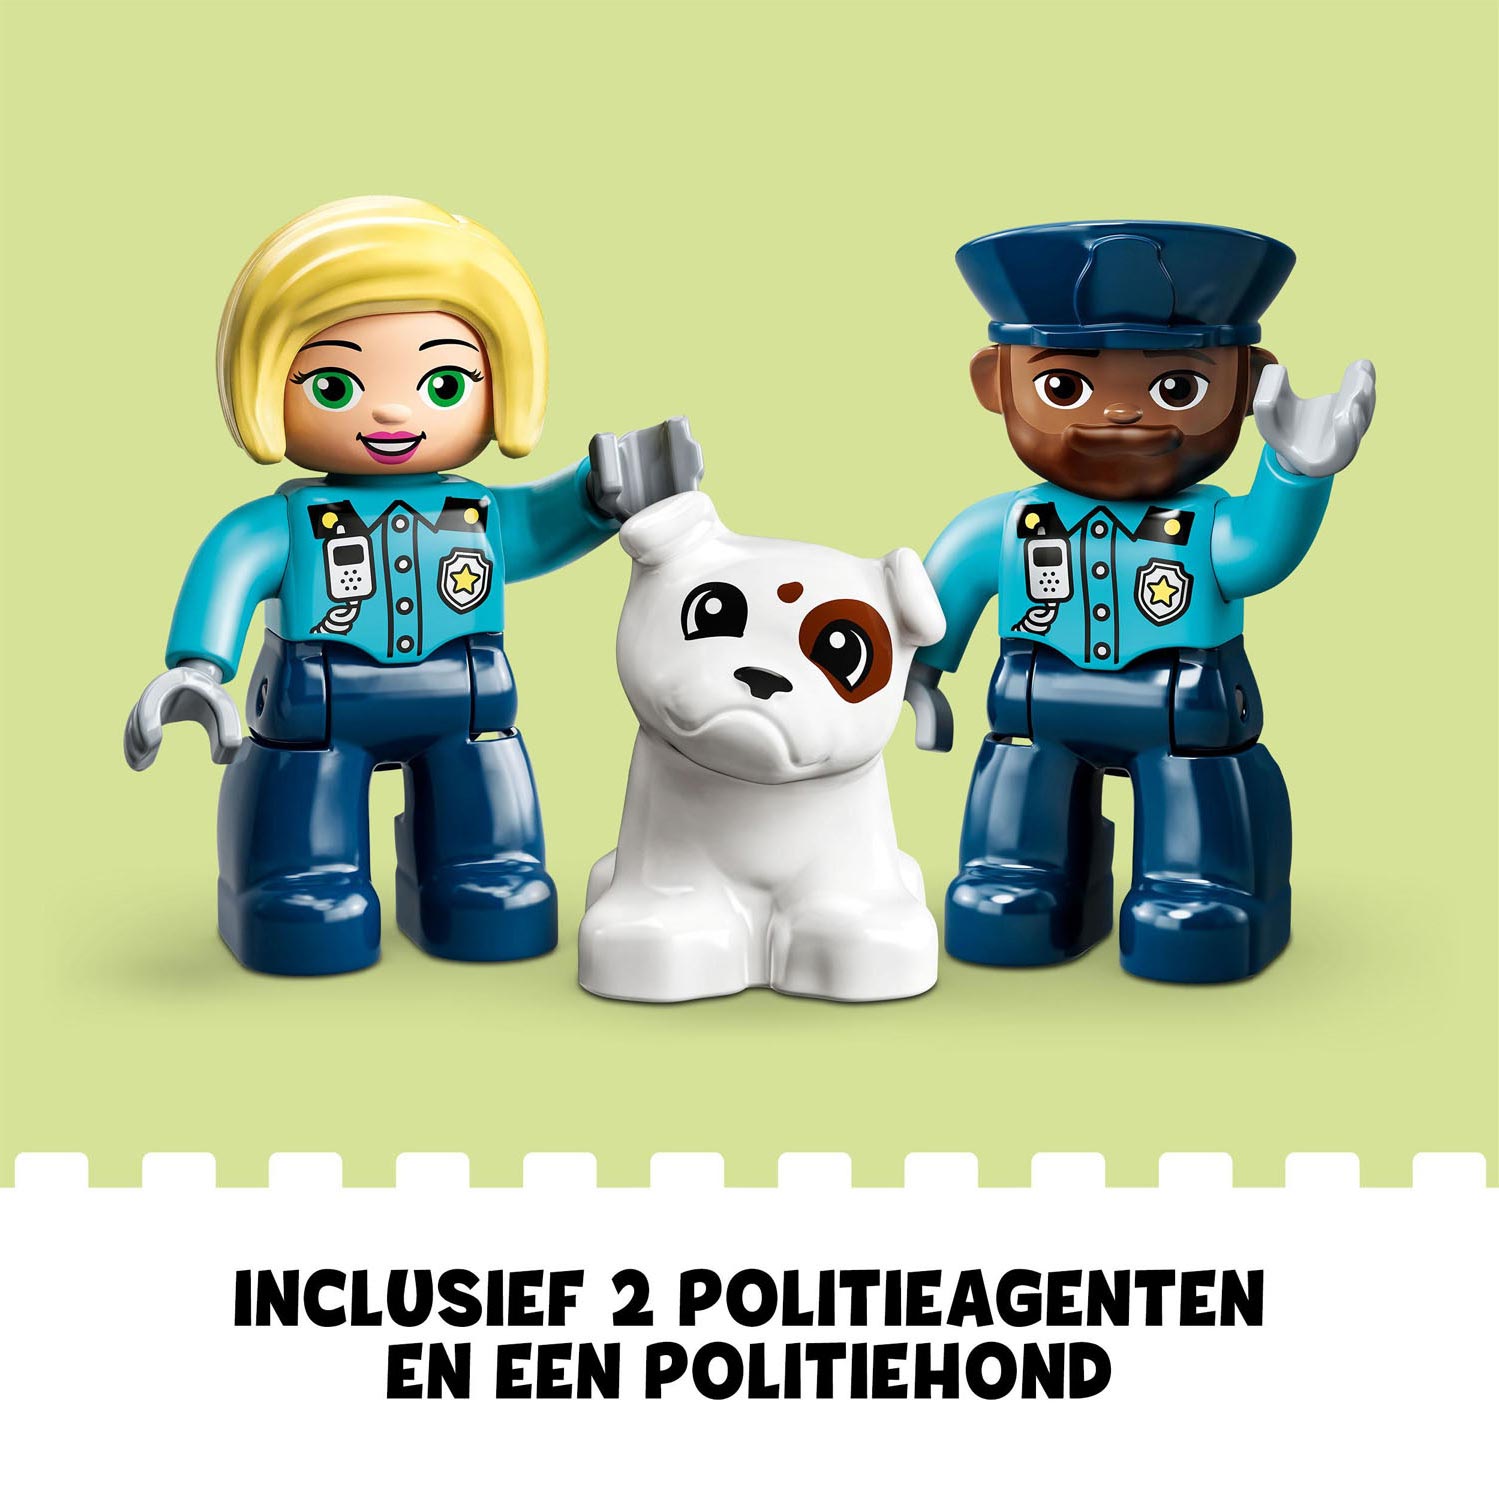 LEGO Duplo 10959 Politiebureau & Helikopter